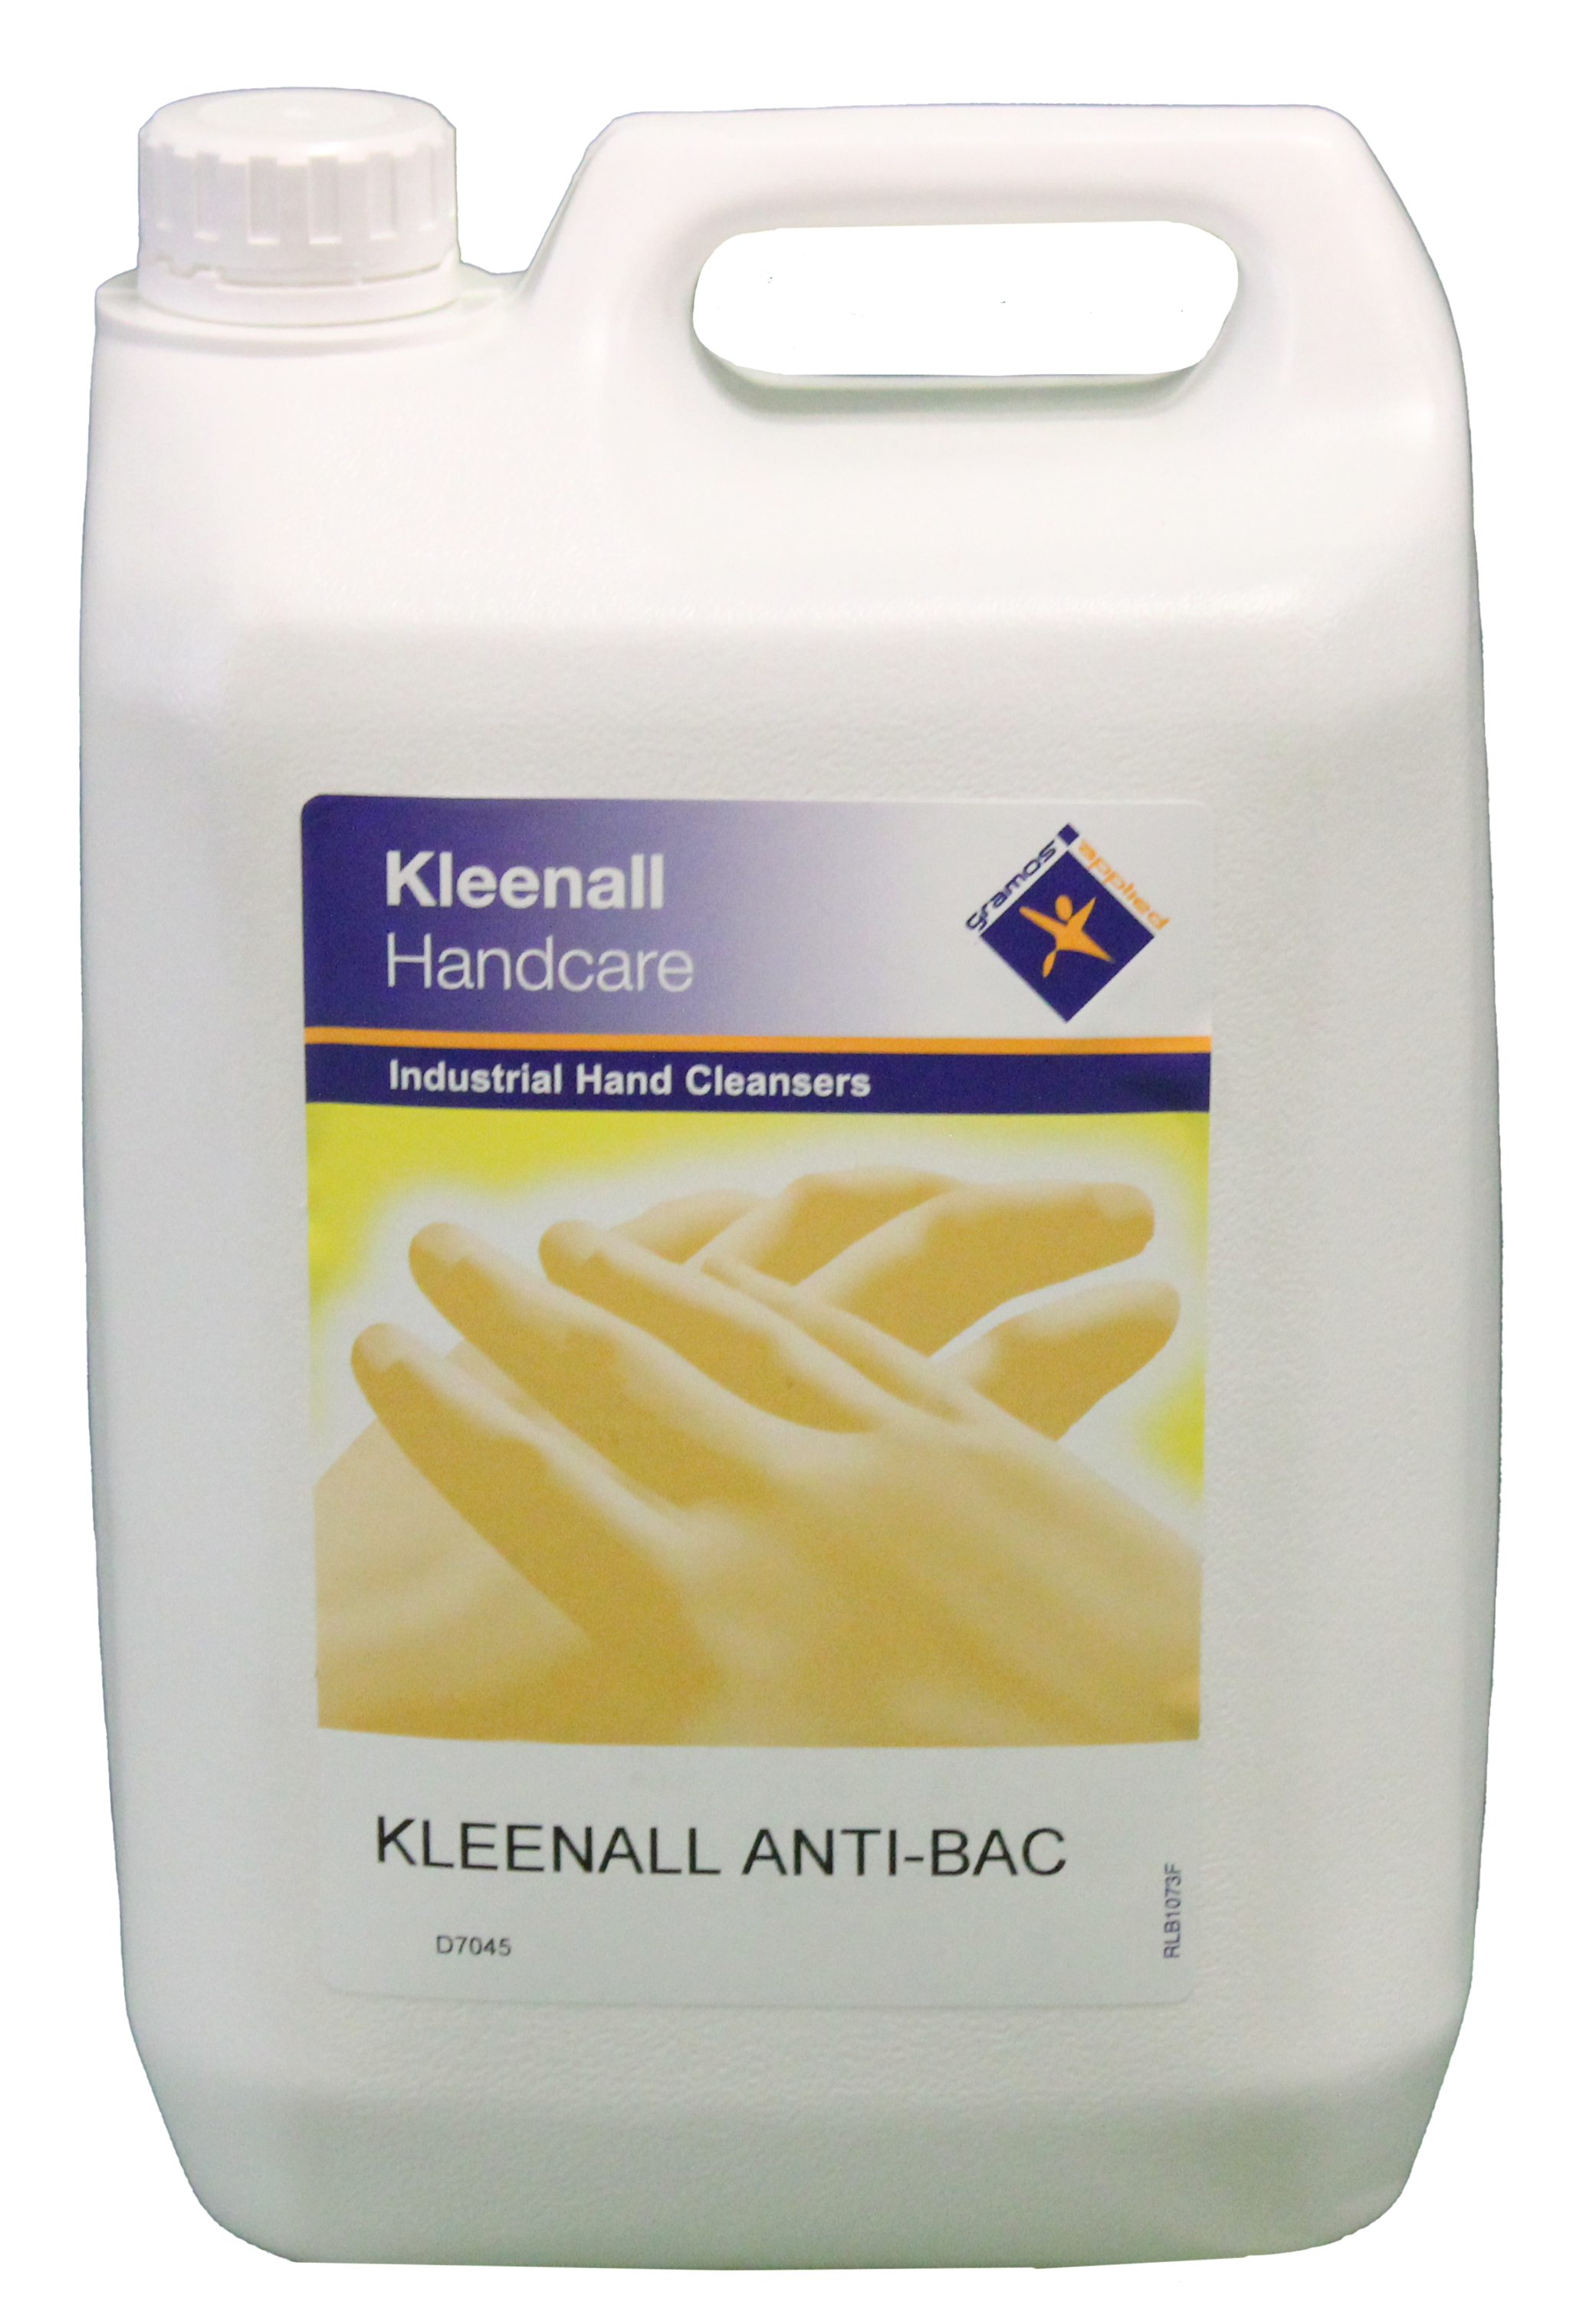 Kleenall Anti-bac